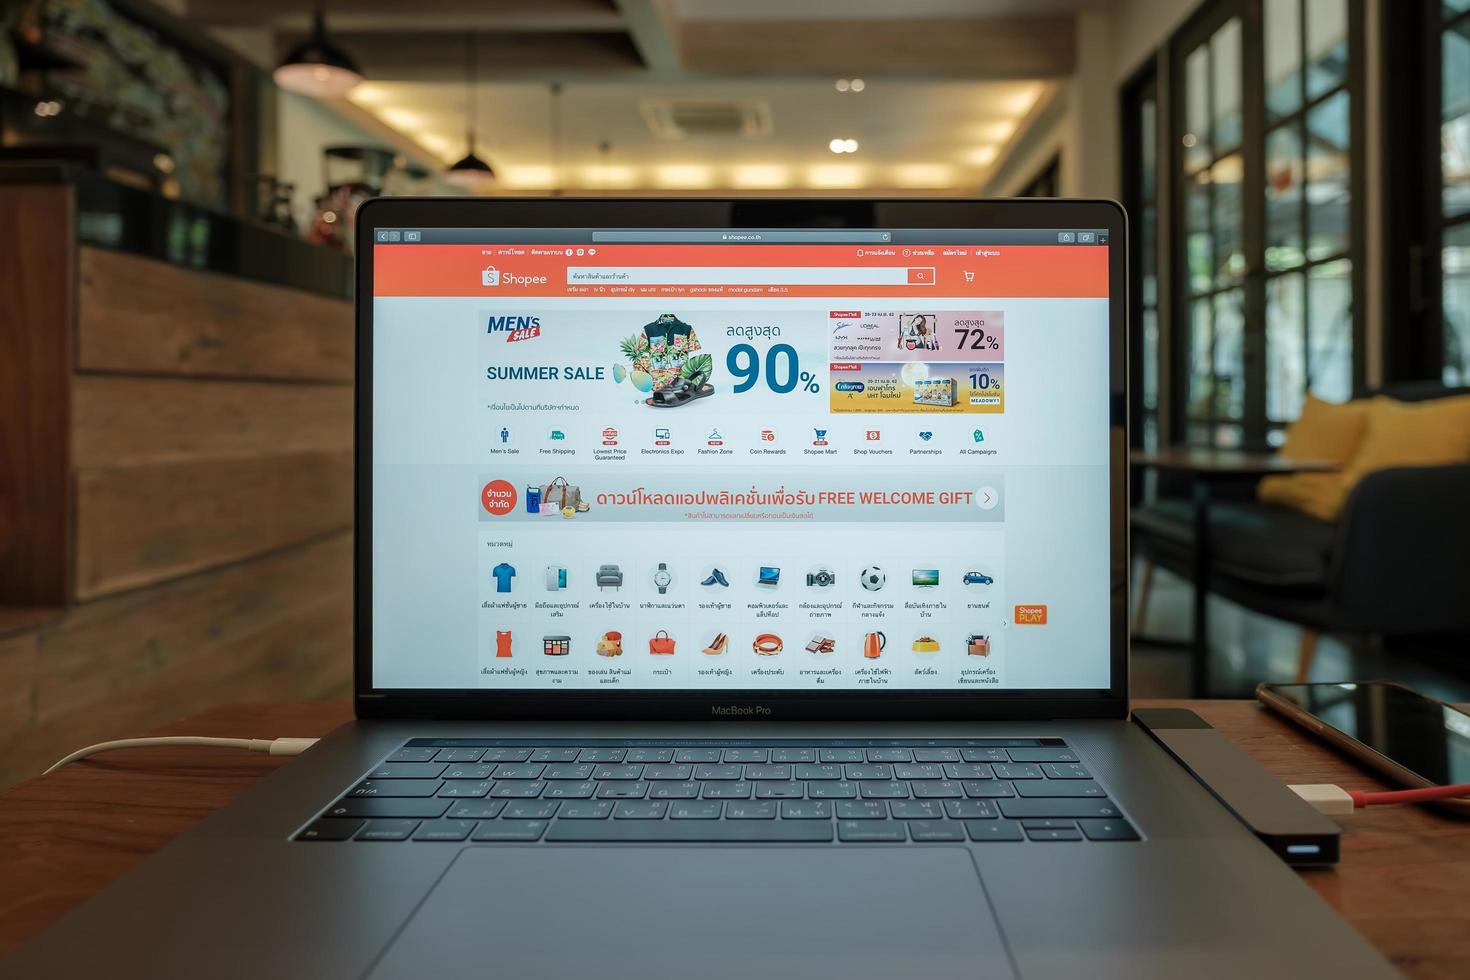 Chiang Mai, Thailand 2019 - Macbook Pro med shopee-webbplats på skärmen foto